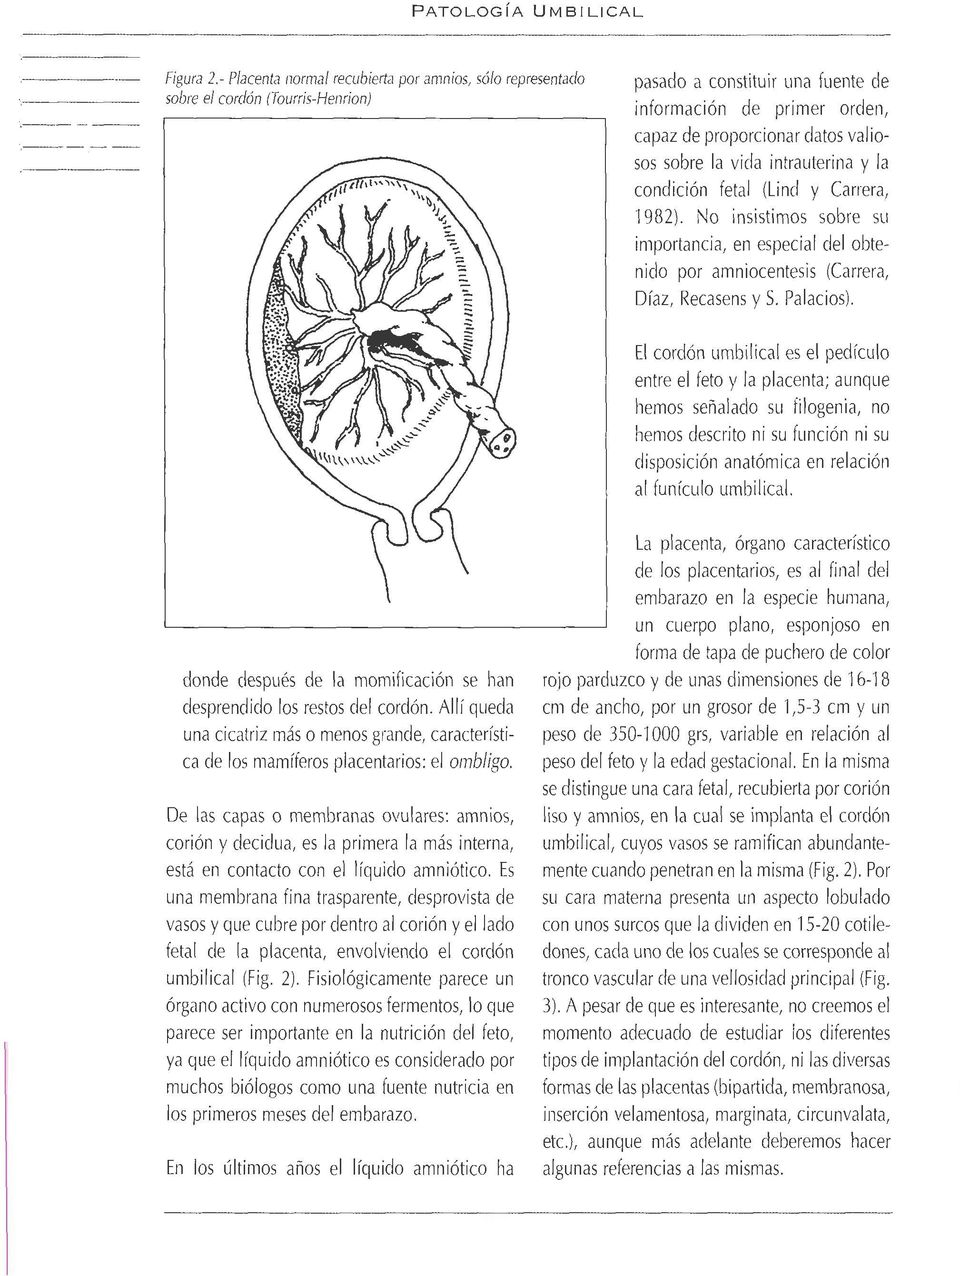 valiosos sobre la vida intrauterina y la condición fetal (Lind y Carrera, 1982). No insistimos sobre sil iniportancia, en especial del obtenido por amniocentesis (Carrera, Díaz, Recasens y S.